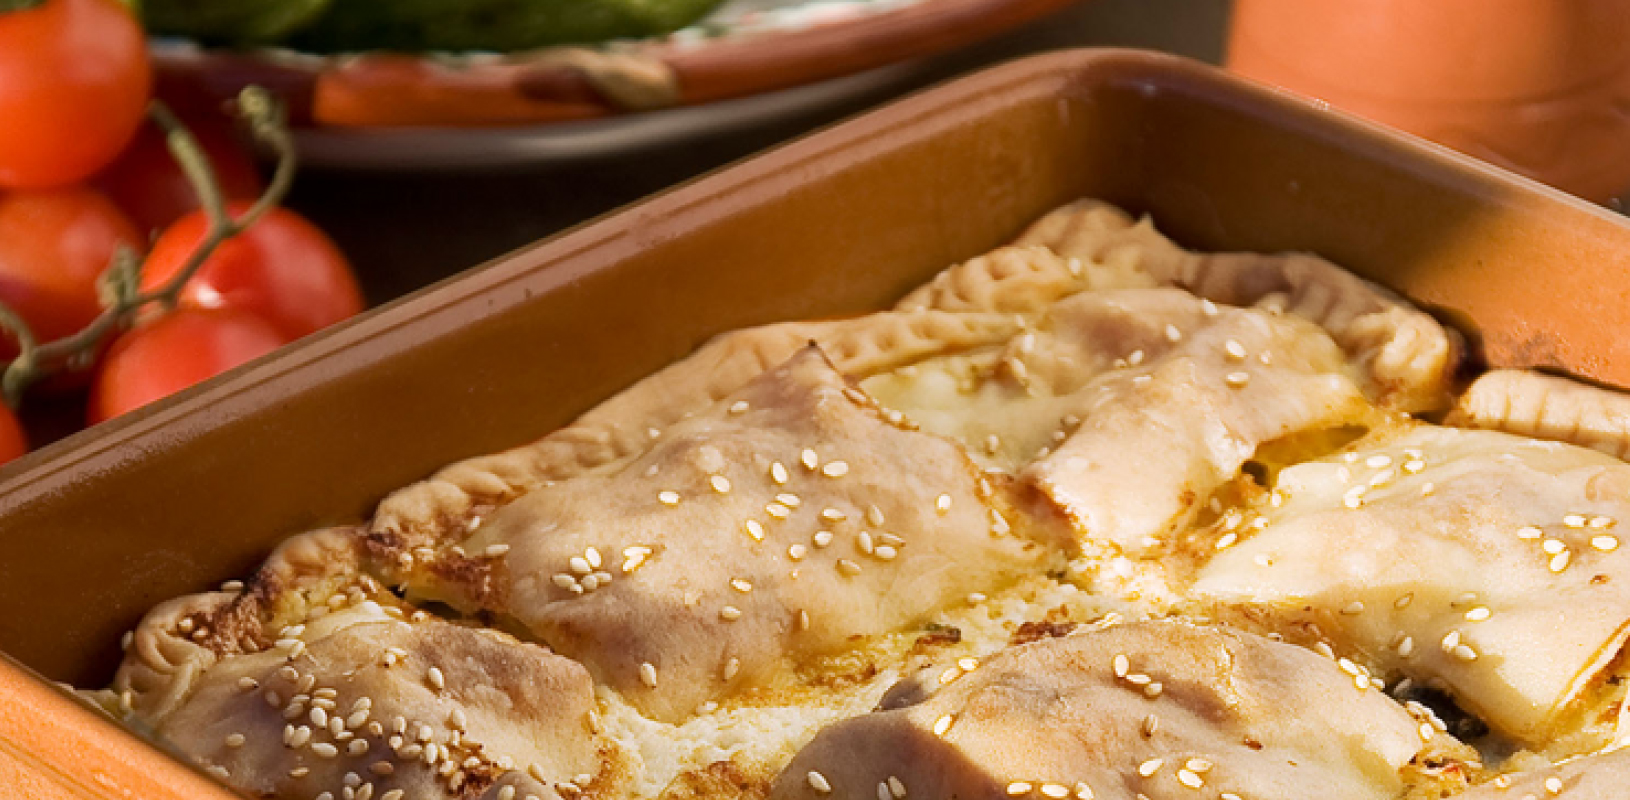 Συνταγές ελληνικών φαγητών - Κρητικές συνταγές με ελαιόλαδο